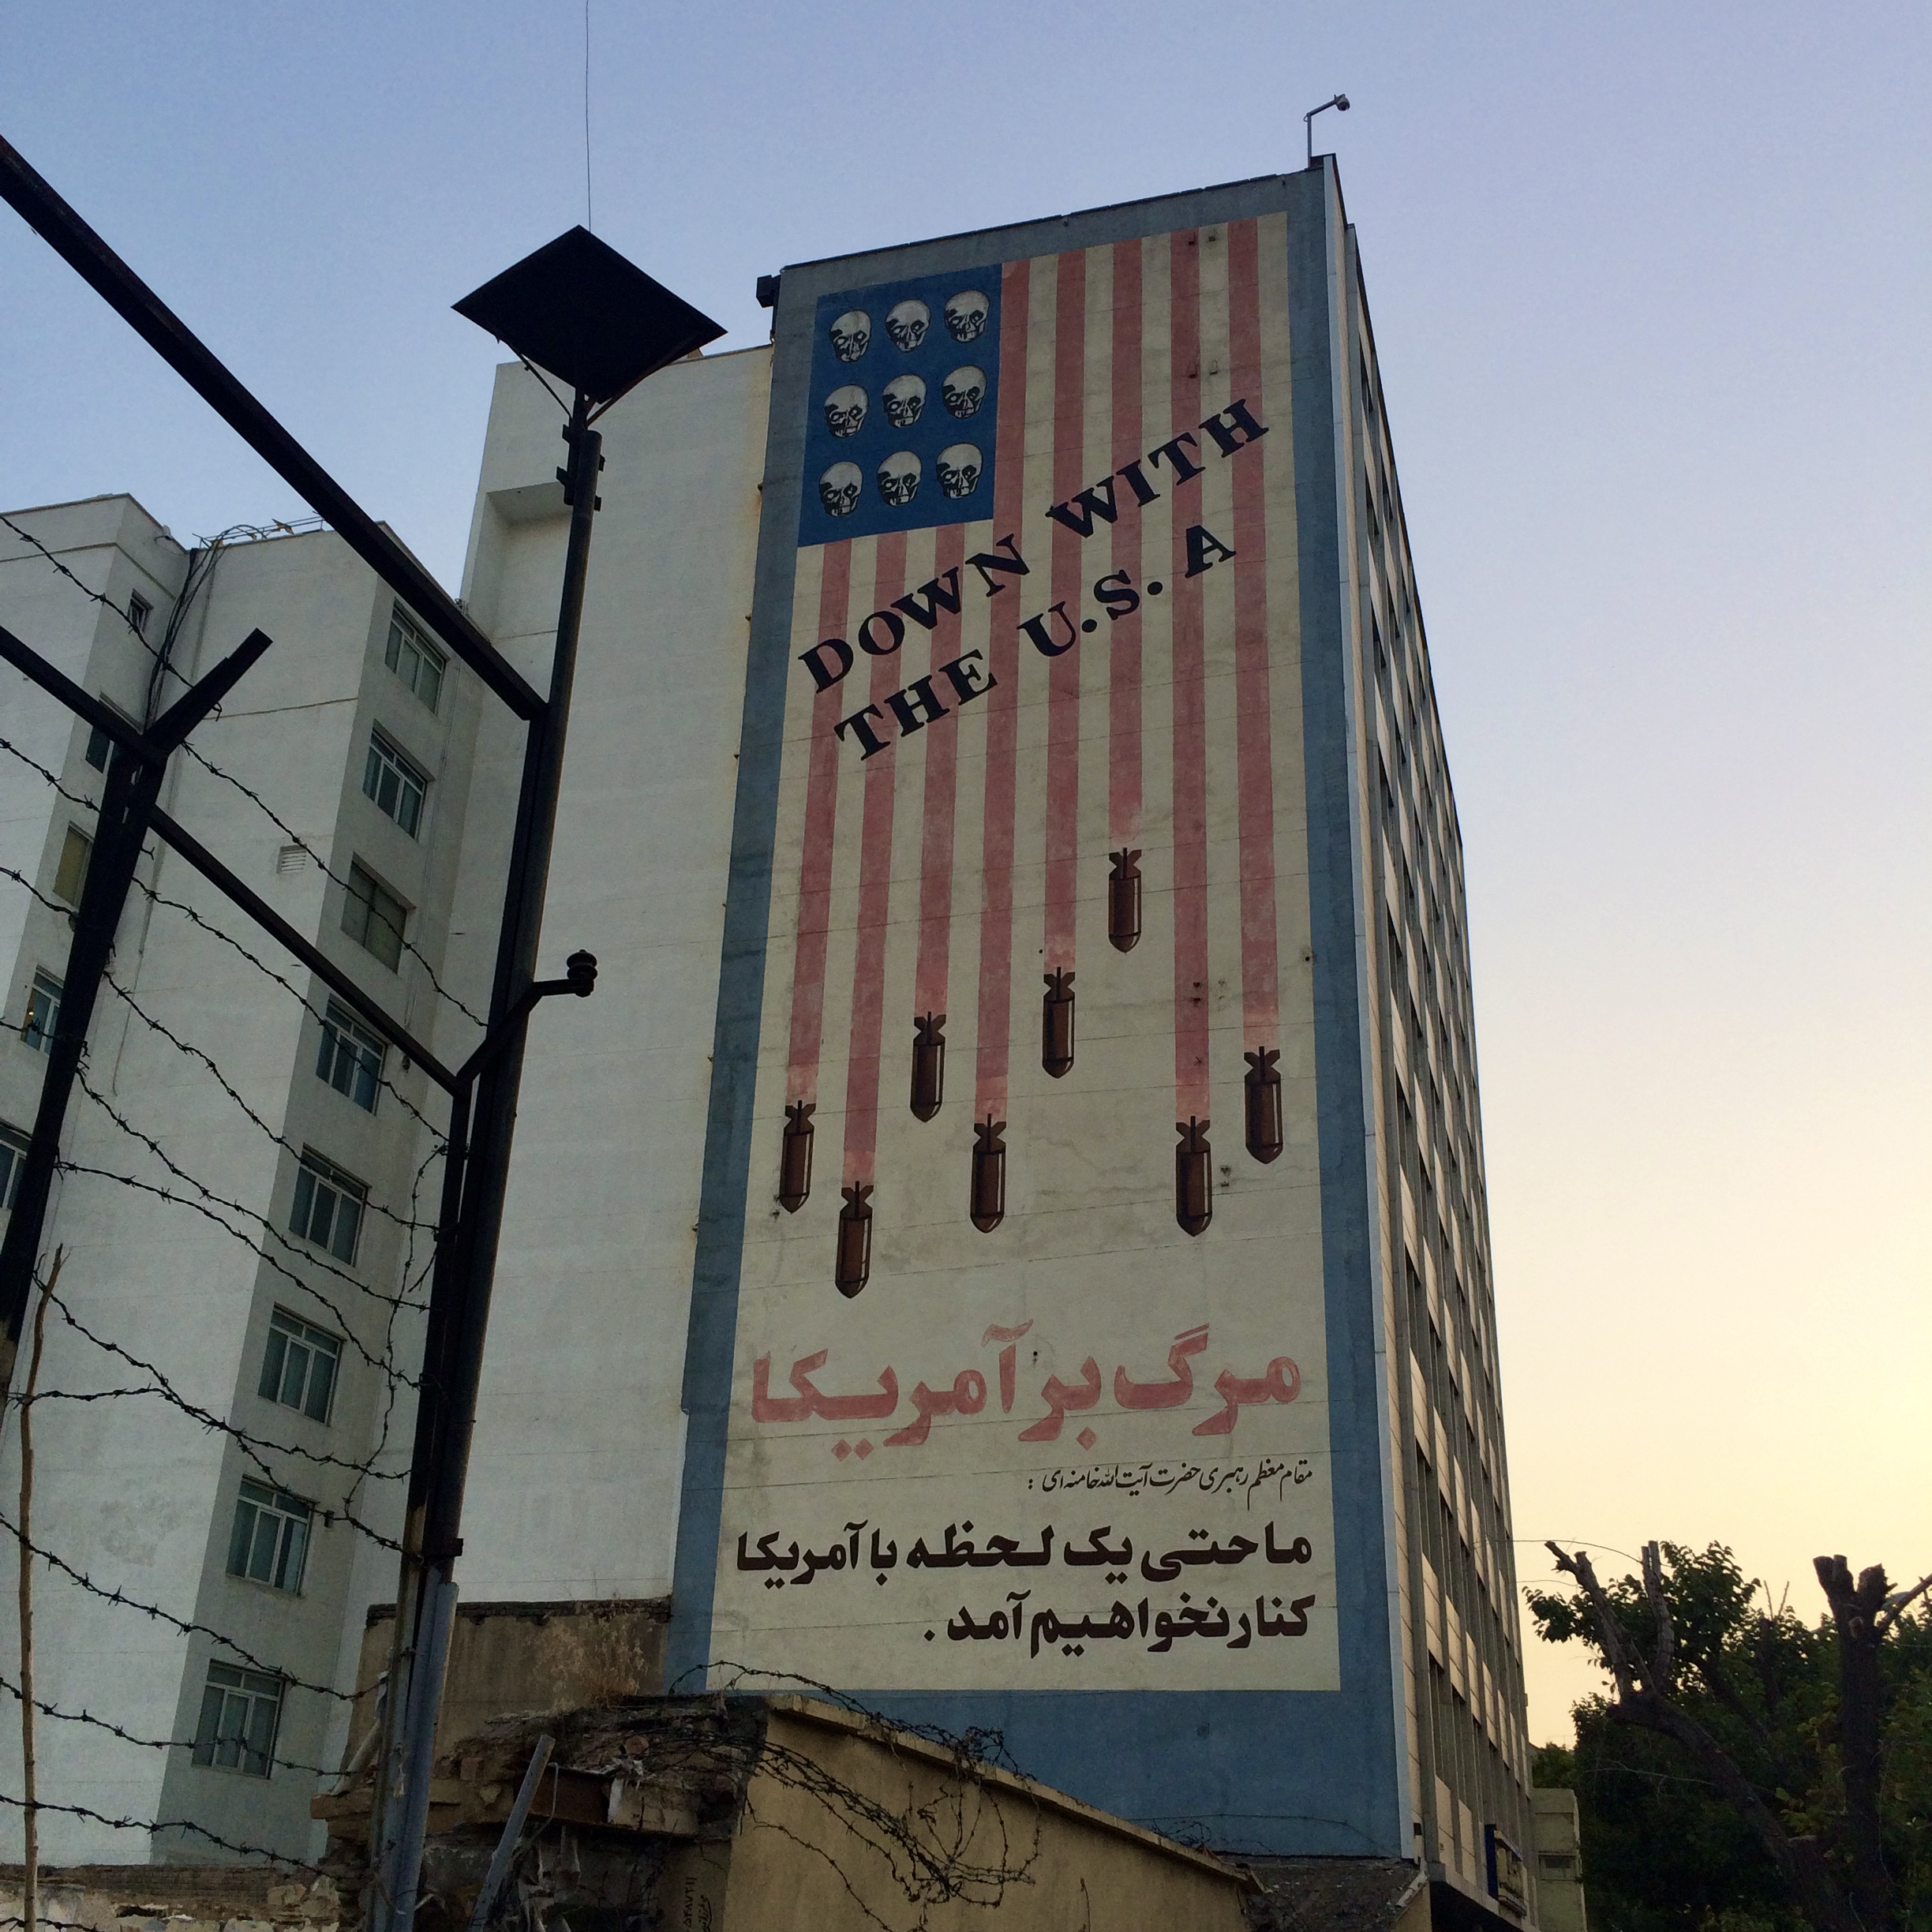 Niet de ambassade, maar een ander voorbeeld van anti-Amerikaans sentiment in Iran (gesponsord door de overheid).